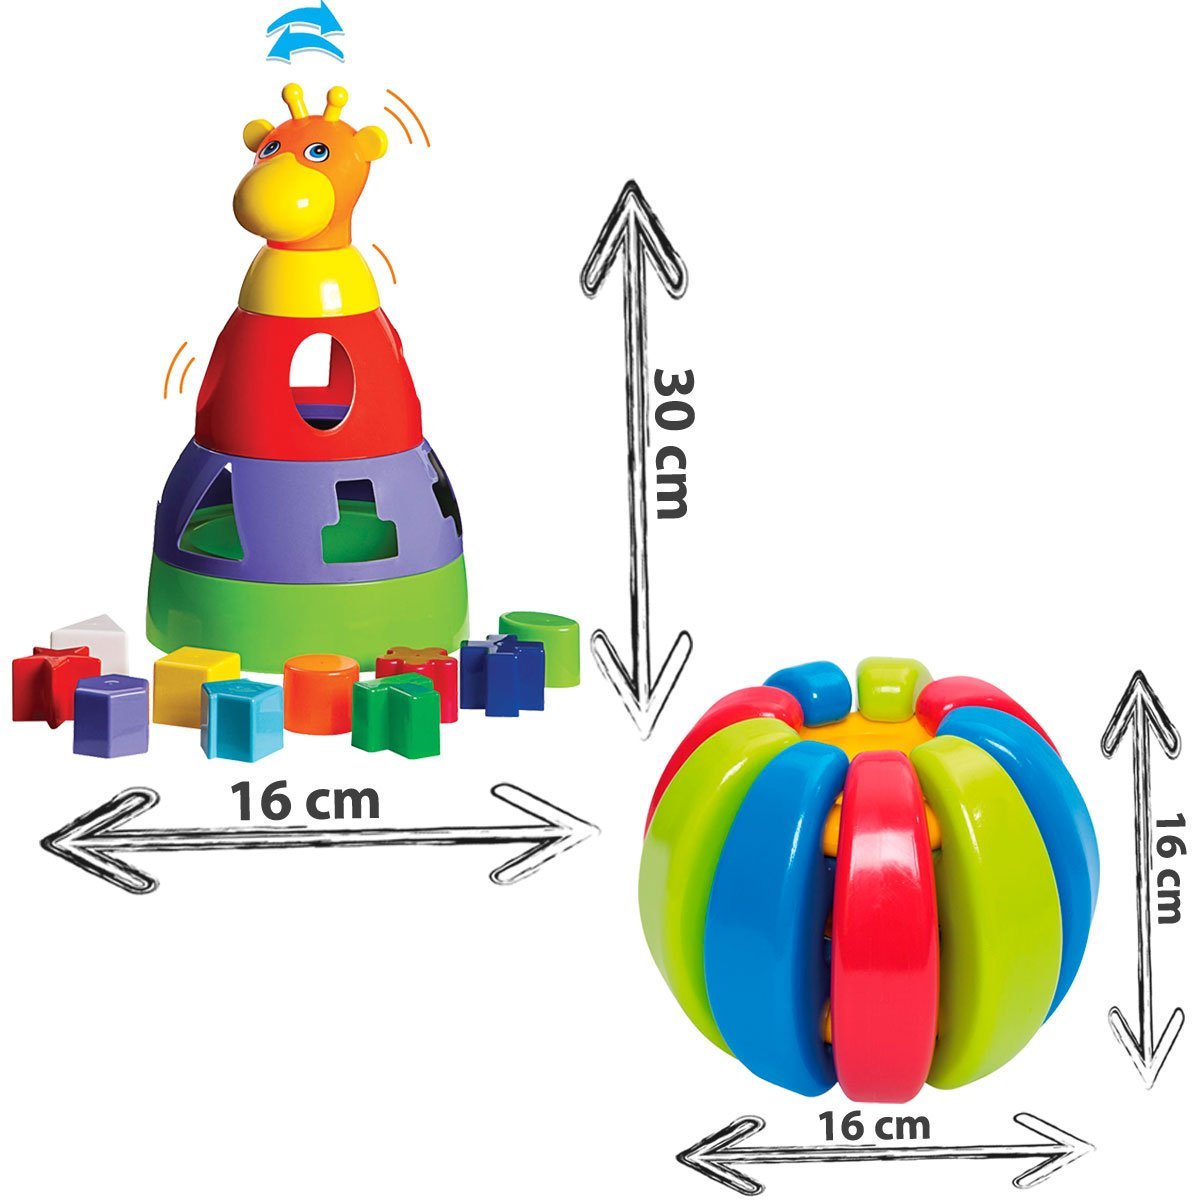 Brinquedo Sensorial Bebê Menina E Menino Educativo + 1 ano - 2